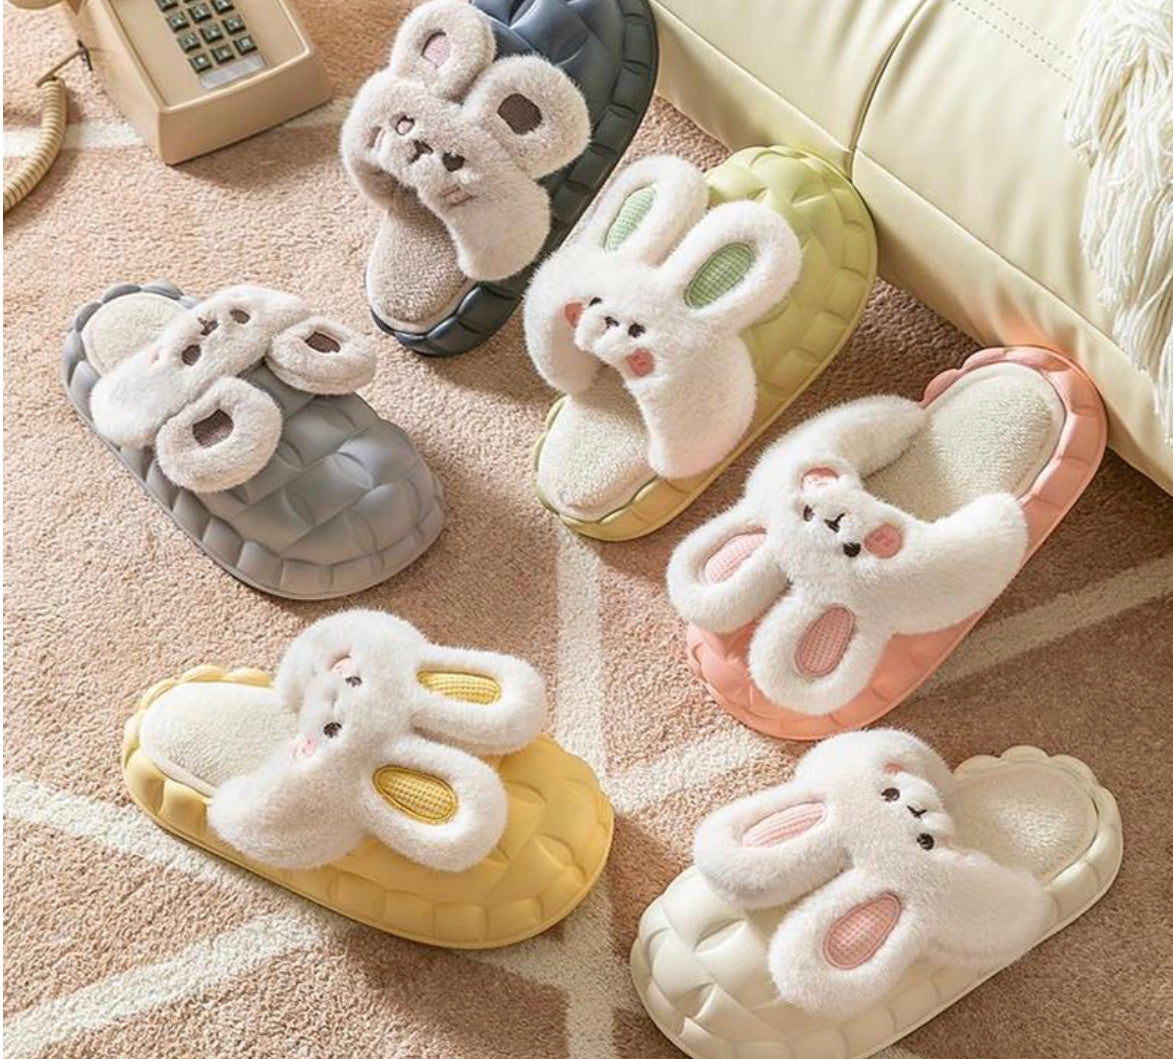 Cute Fuzzy Rabbit Detachable Washable House Shoes